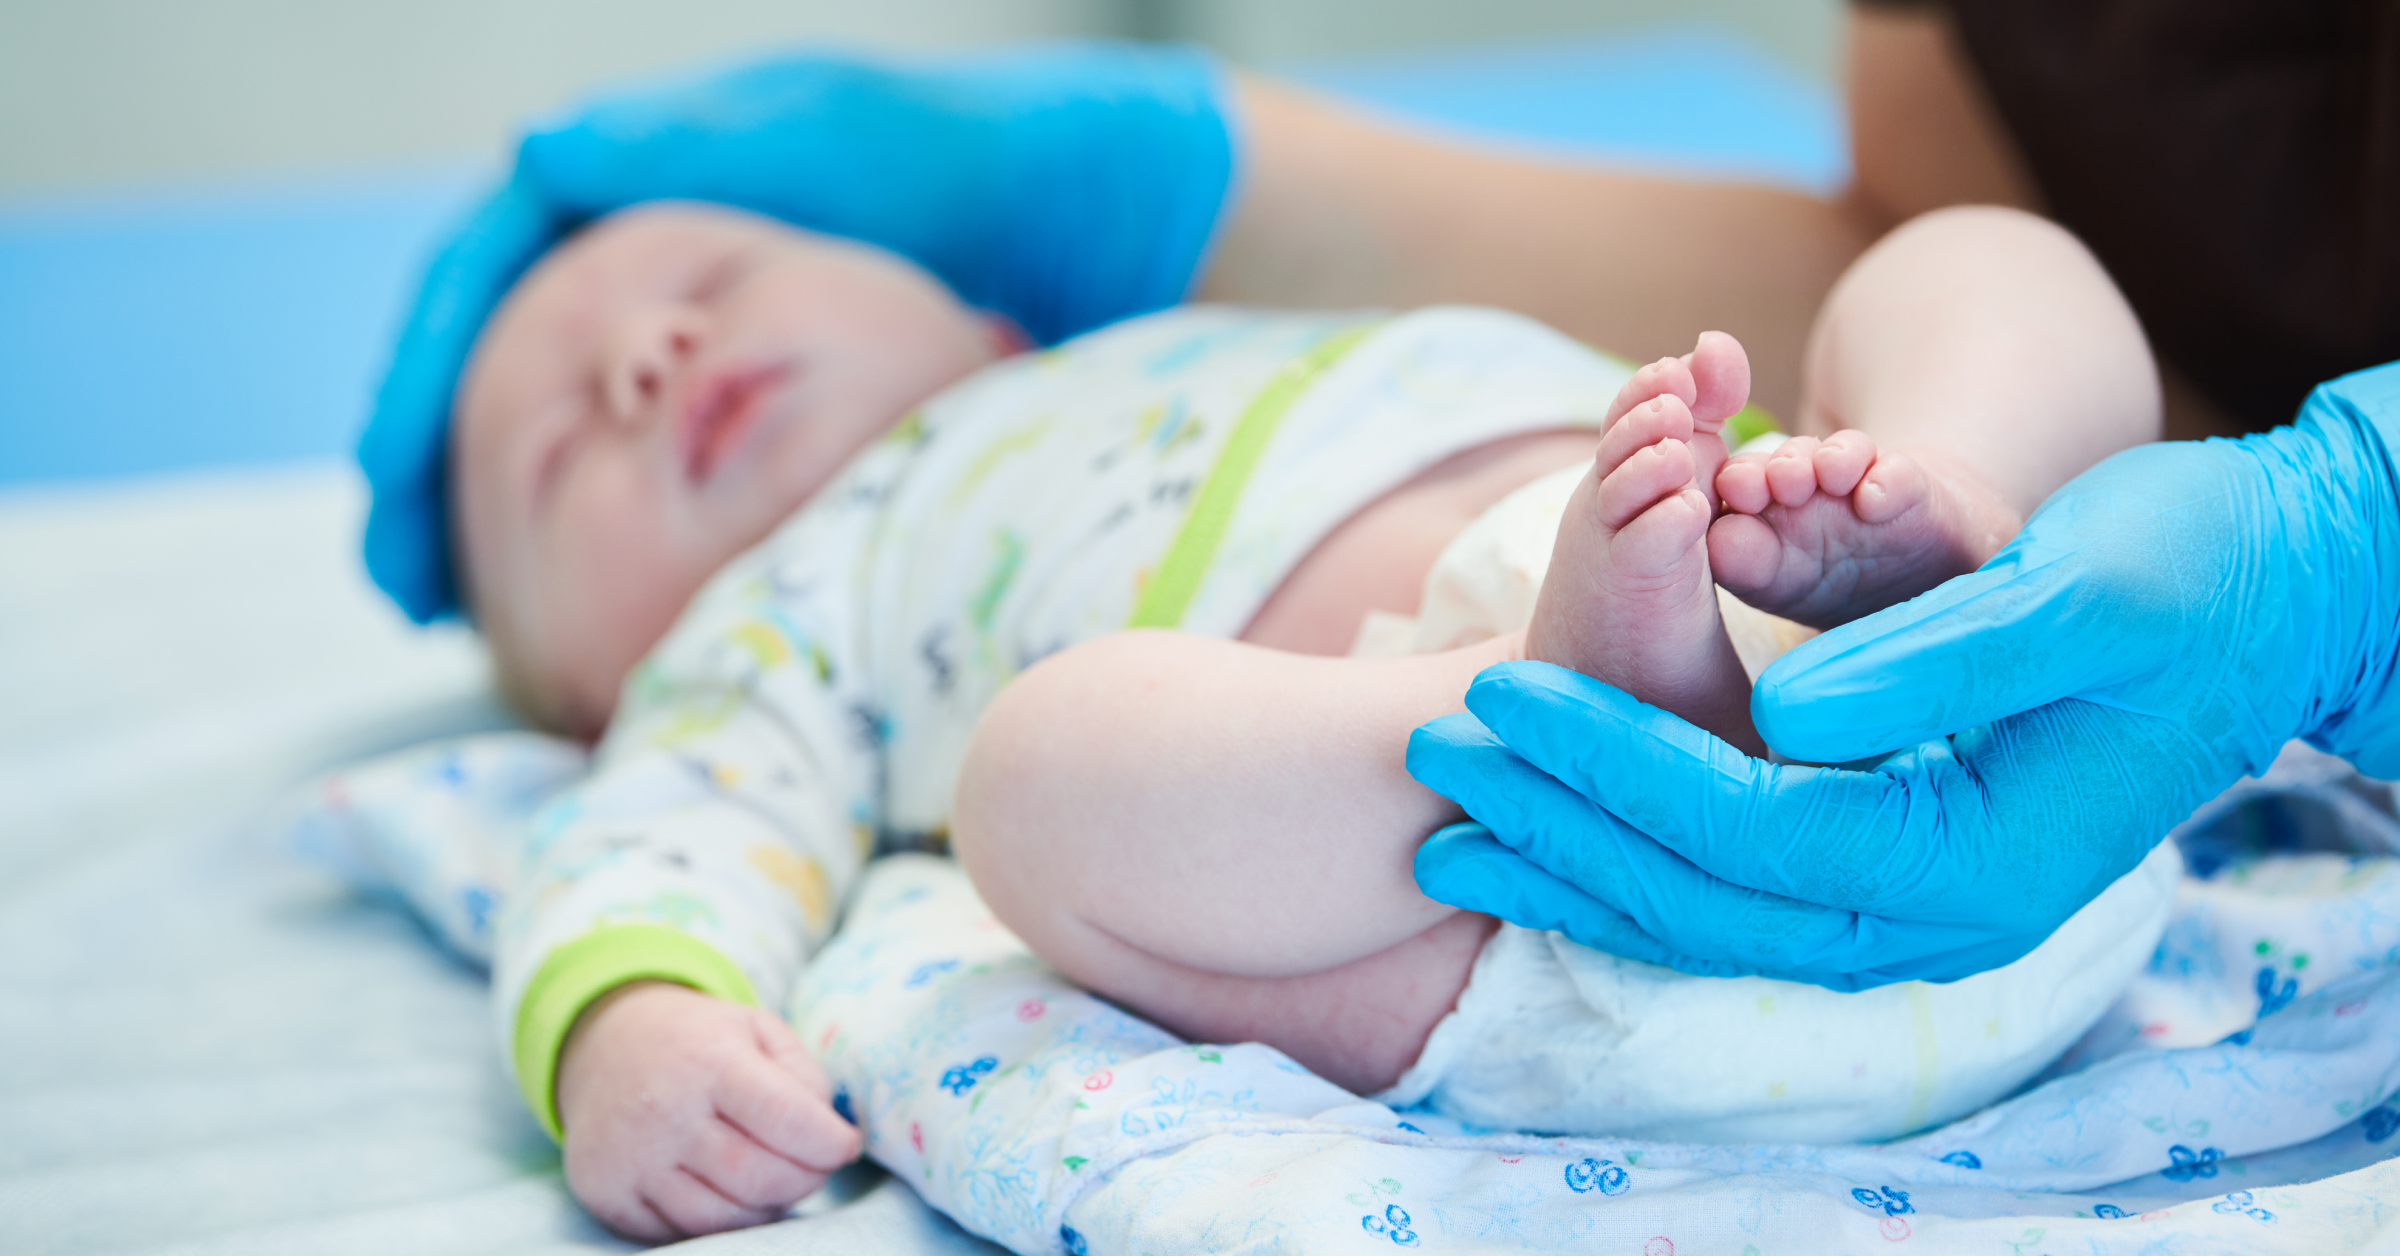 Ein Säugling wird von einer Person mit blauen Untersuchungshandschuhen untersucht. SIDS und BRUE im AMBOSS-Blog.